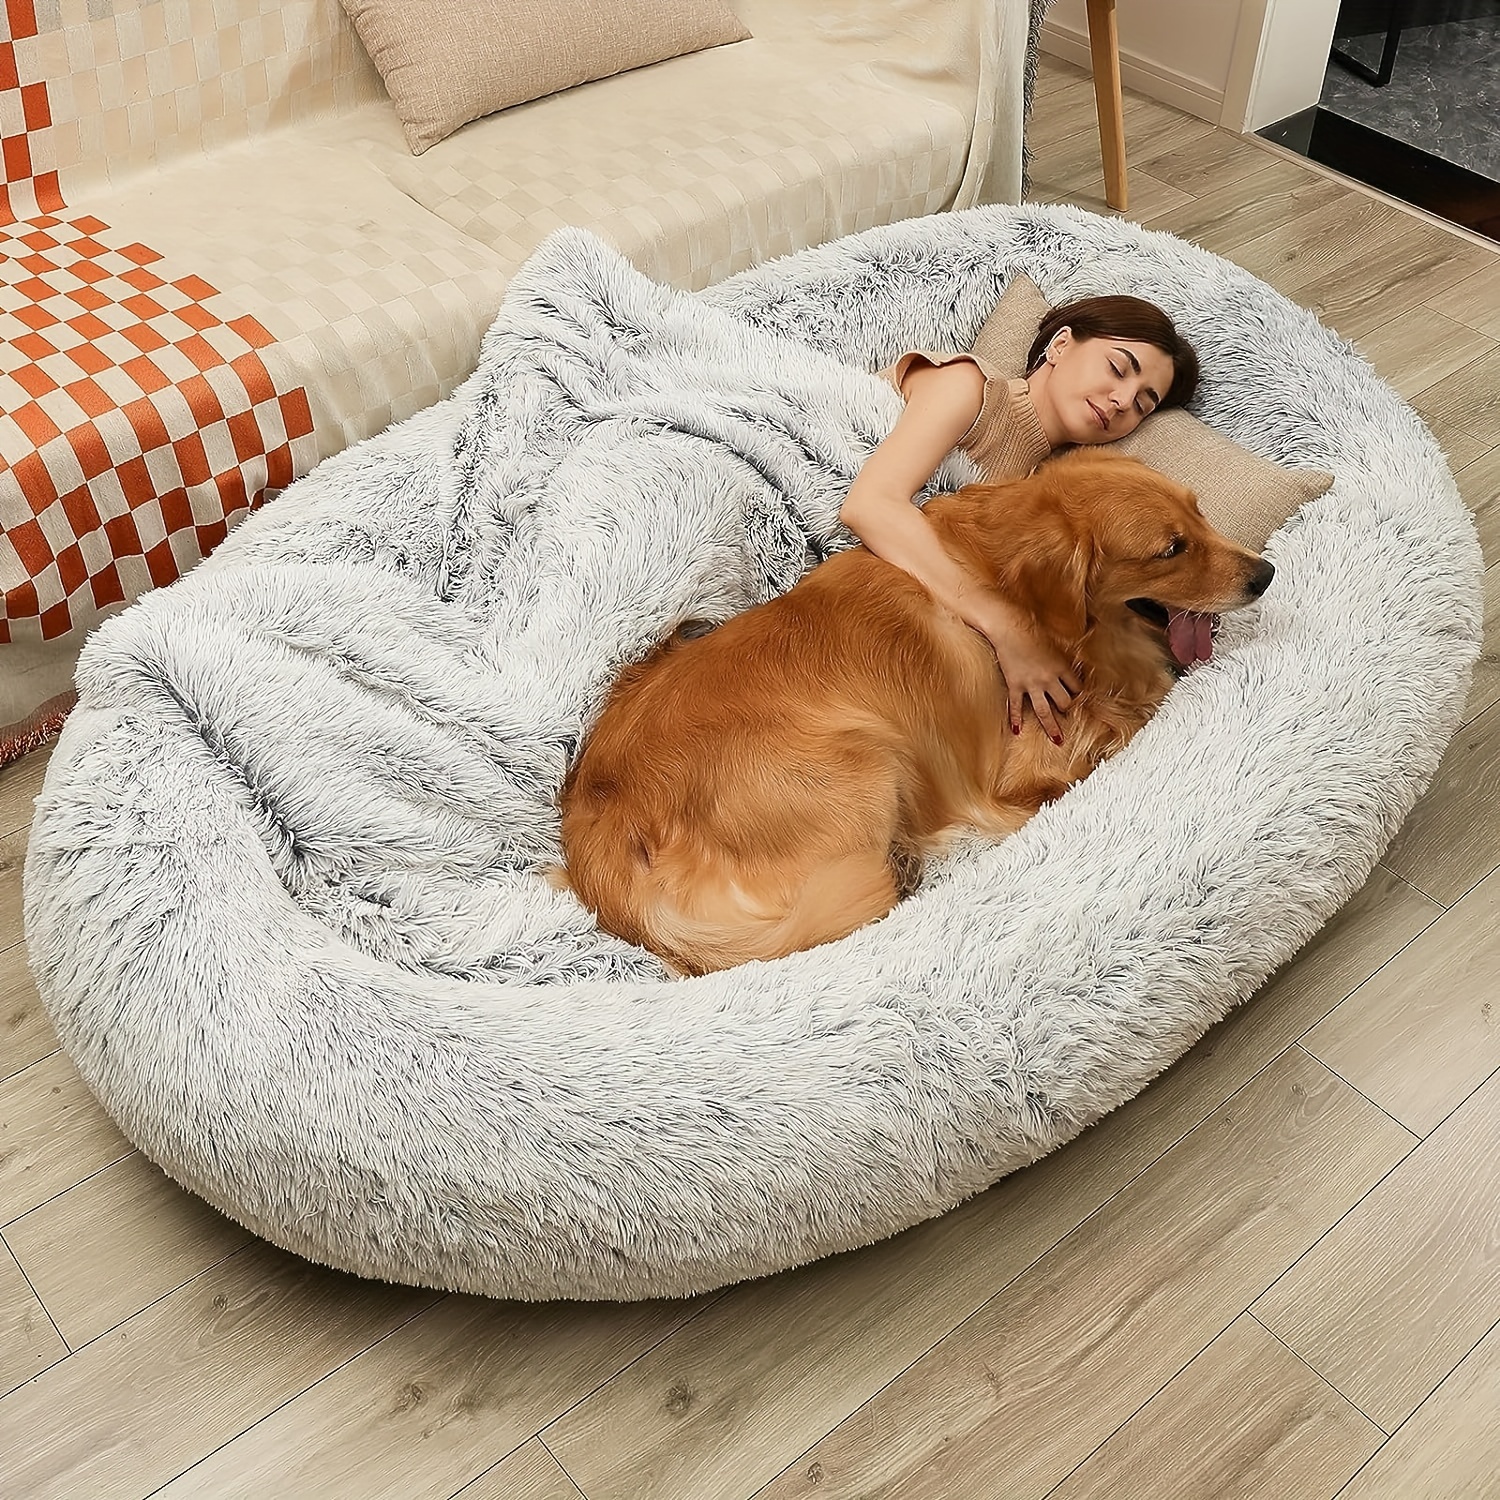 ペット用品大人用ヒューマンドッグベッド、心を落ち着かせる人間サイズの巨大な犬用ベッド